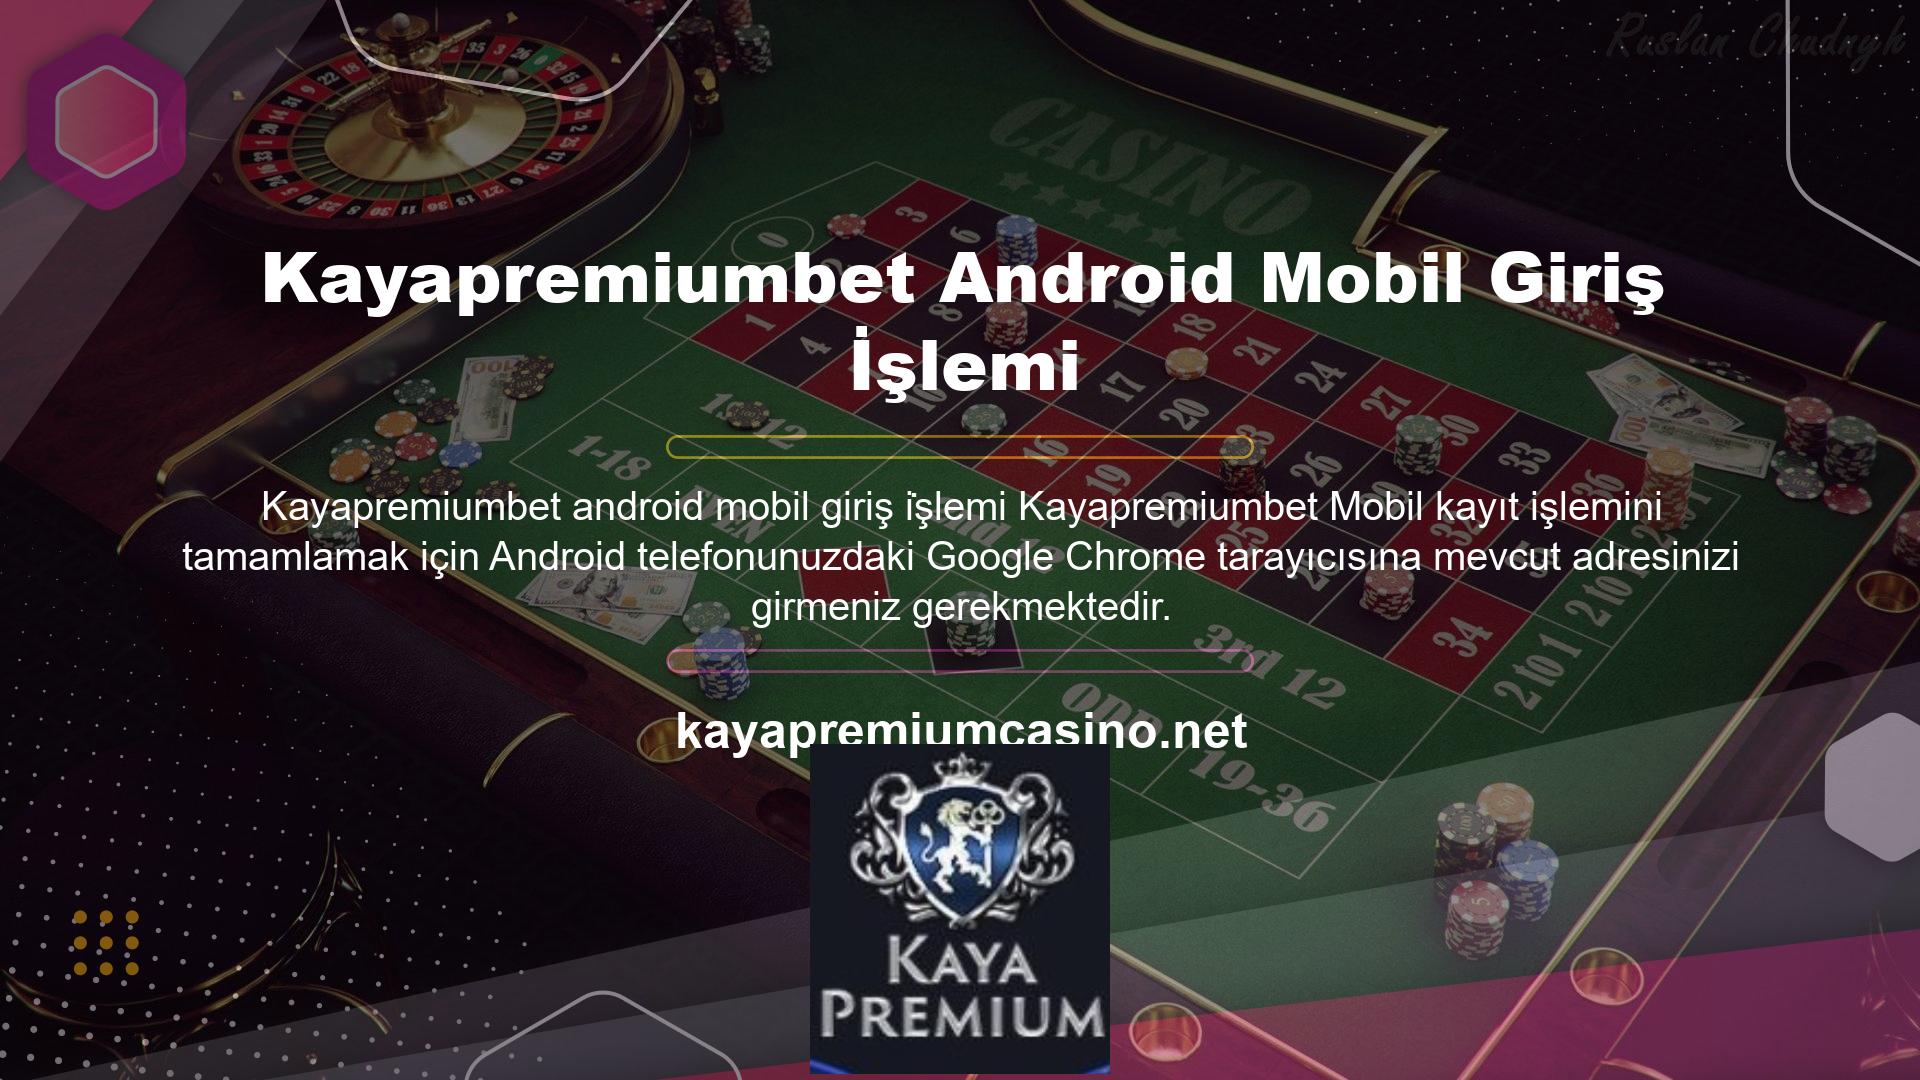 Giriş yapan kullanıcılar, cep telefonlarında bahis oluşturabilir ve casino oyunlarına katılabilir